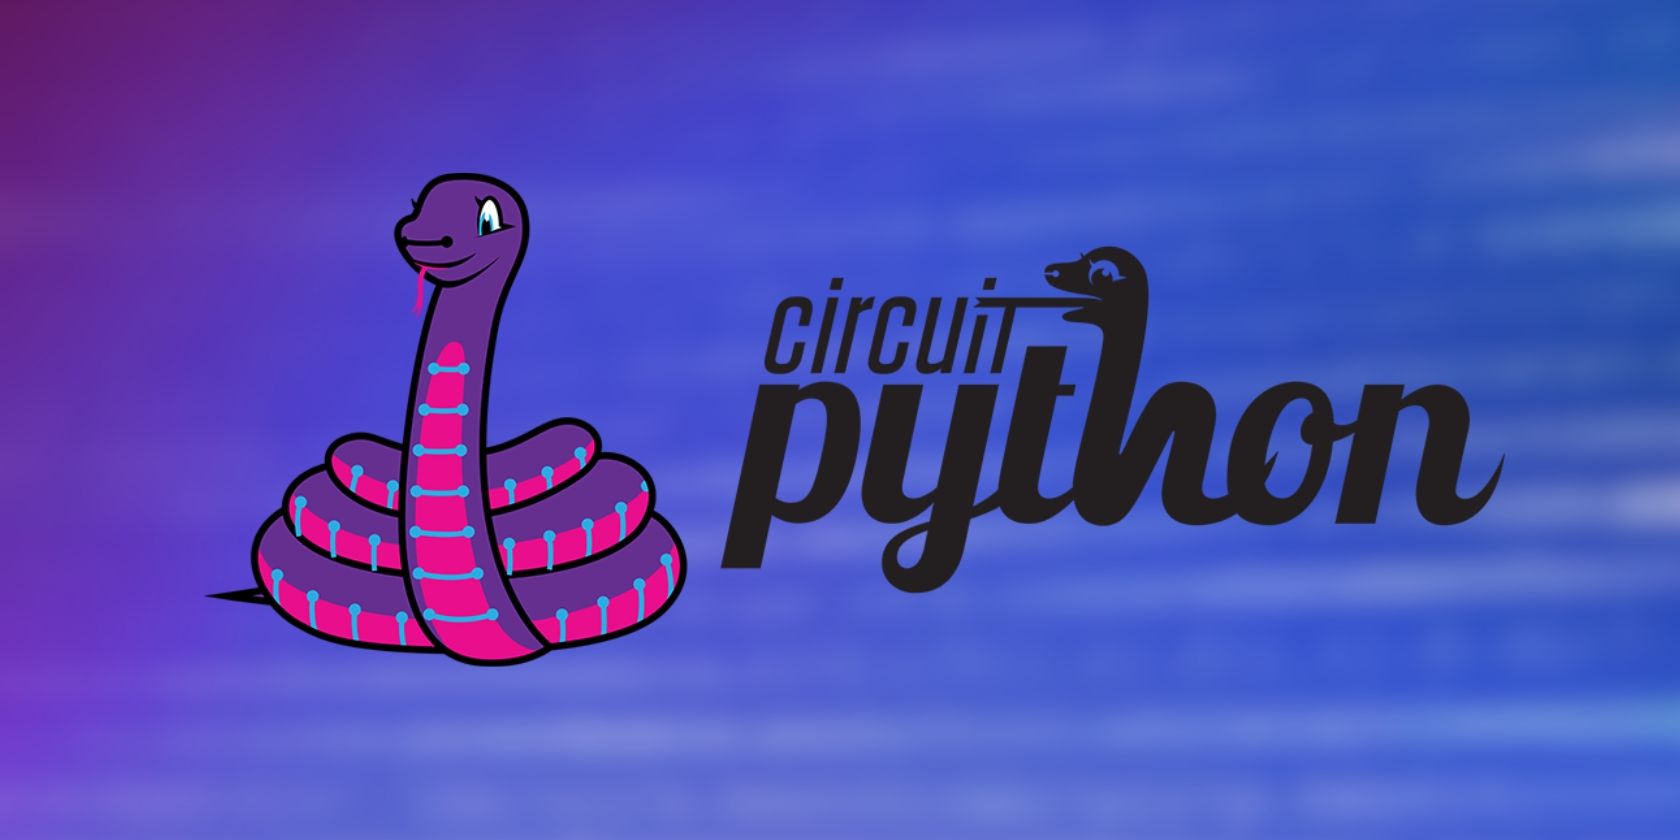 CircuitPython logo comprising a coiled snake